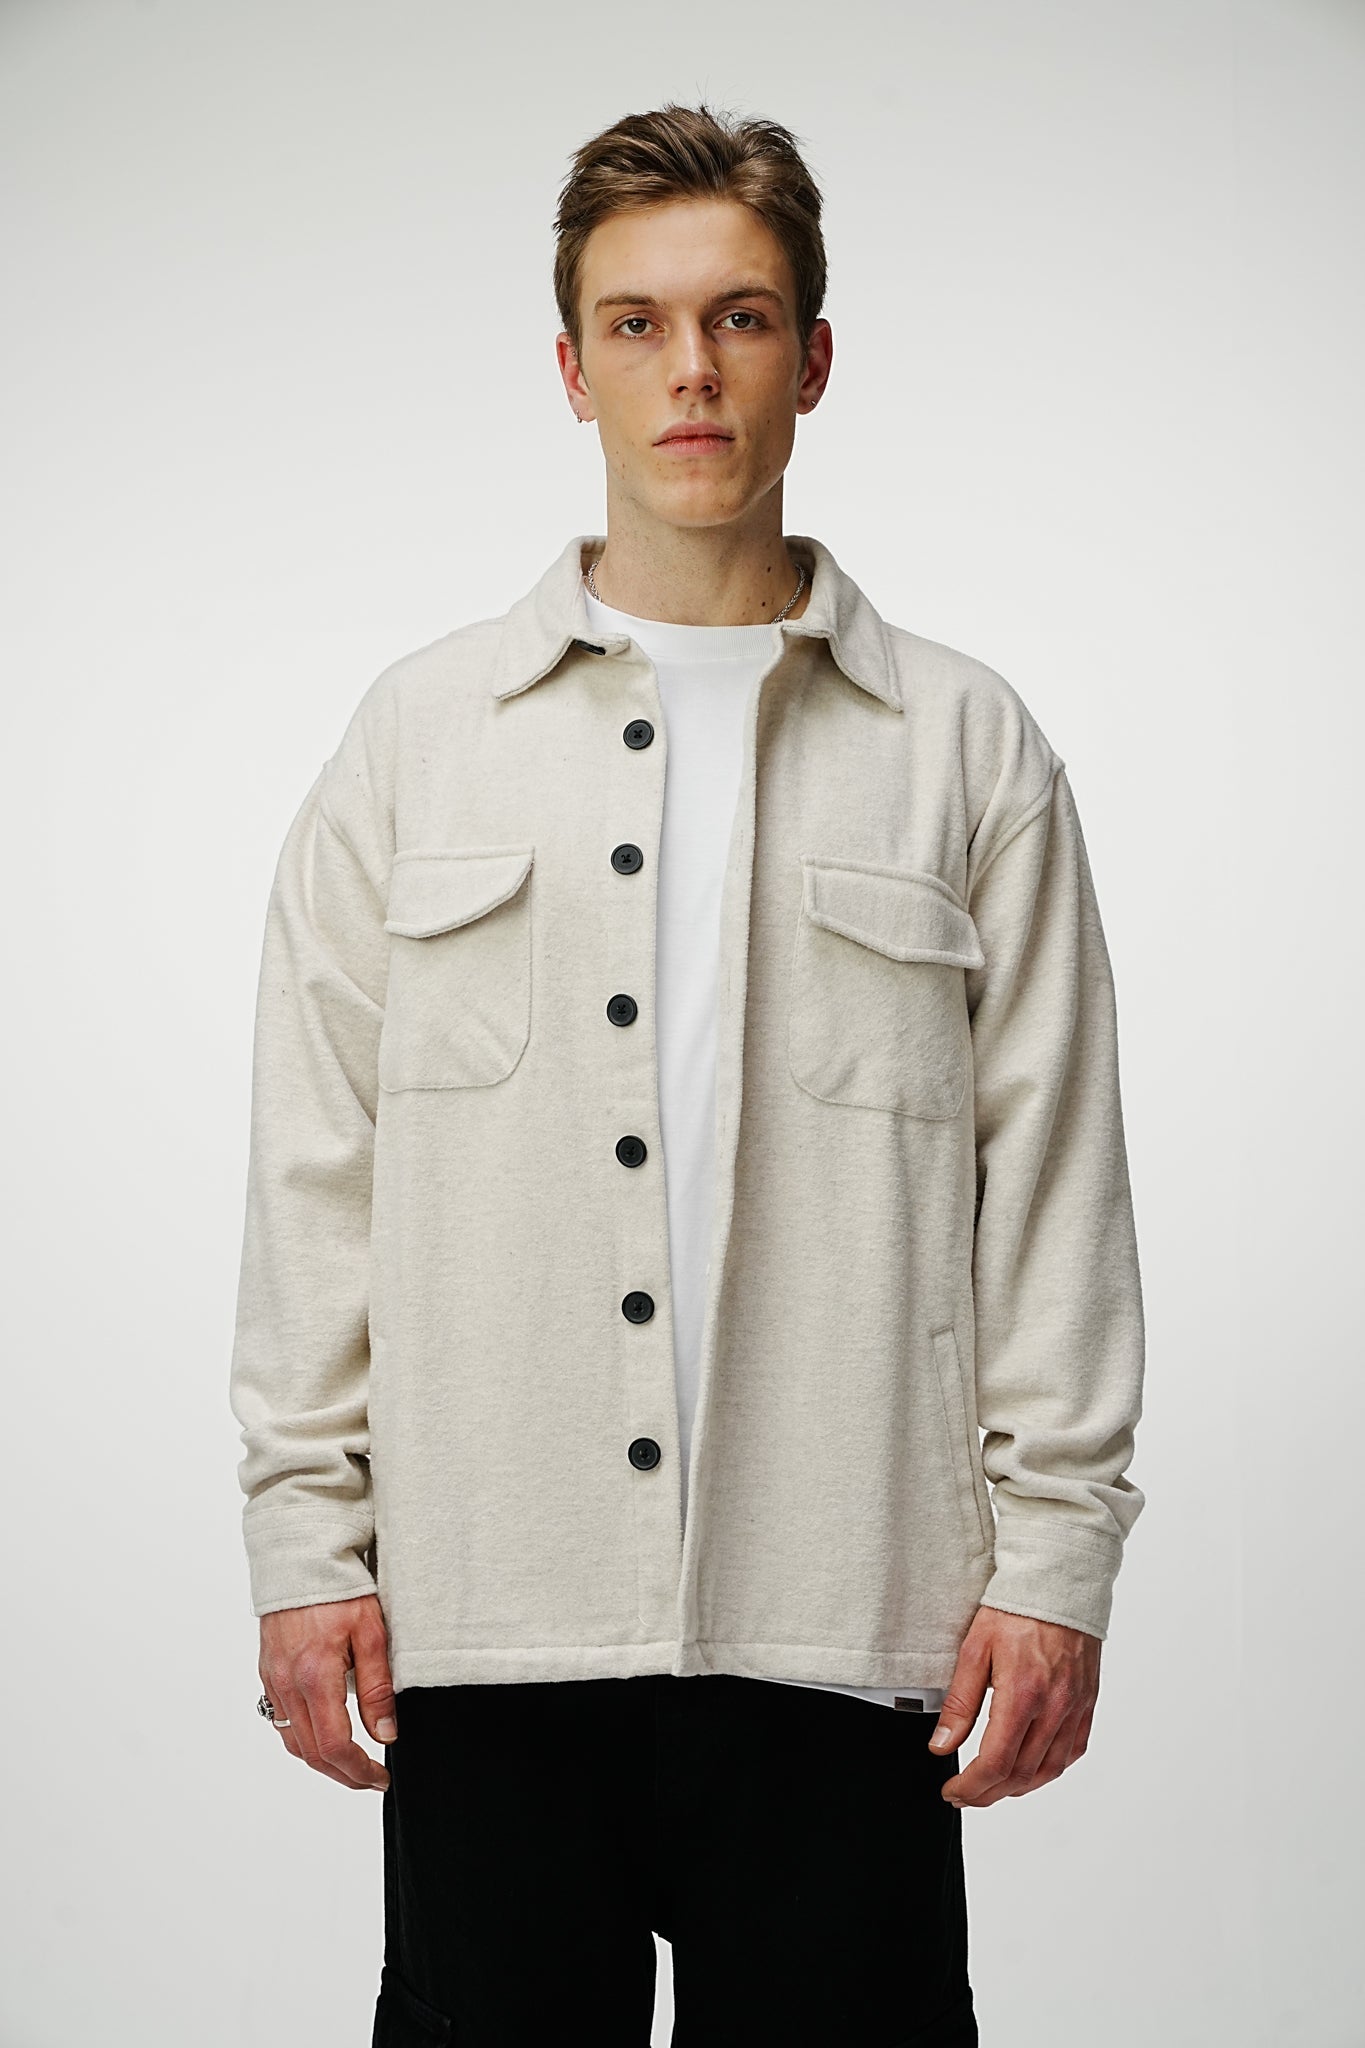 Heavy Premium Flannel Shirt Cream - UNEFFECTED STUDIOS® - Shirts & Tops - UNEFFECTED STUDIOS®